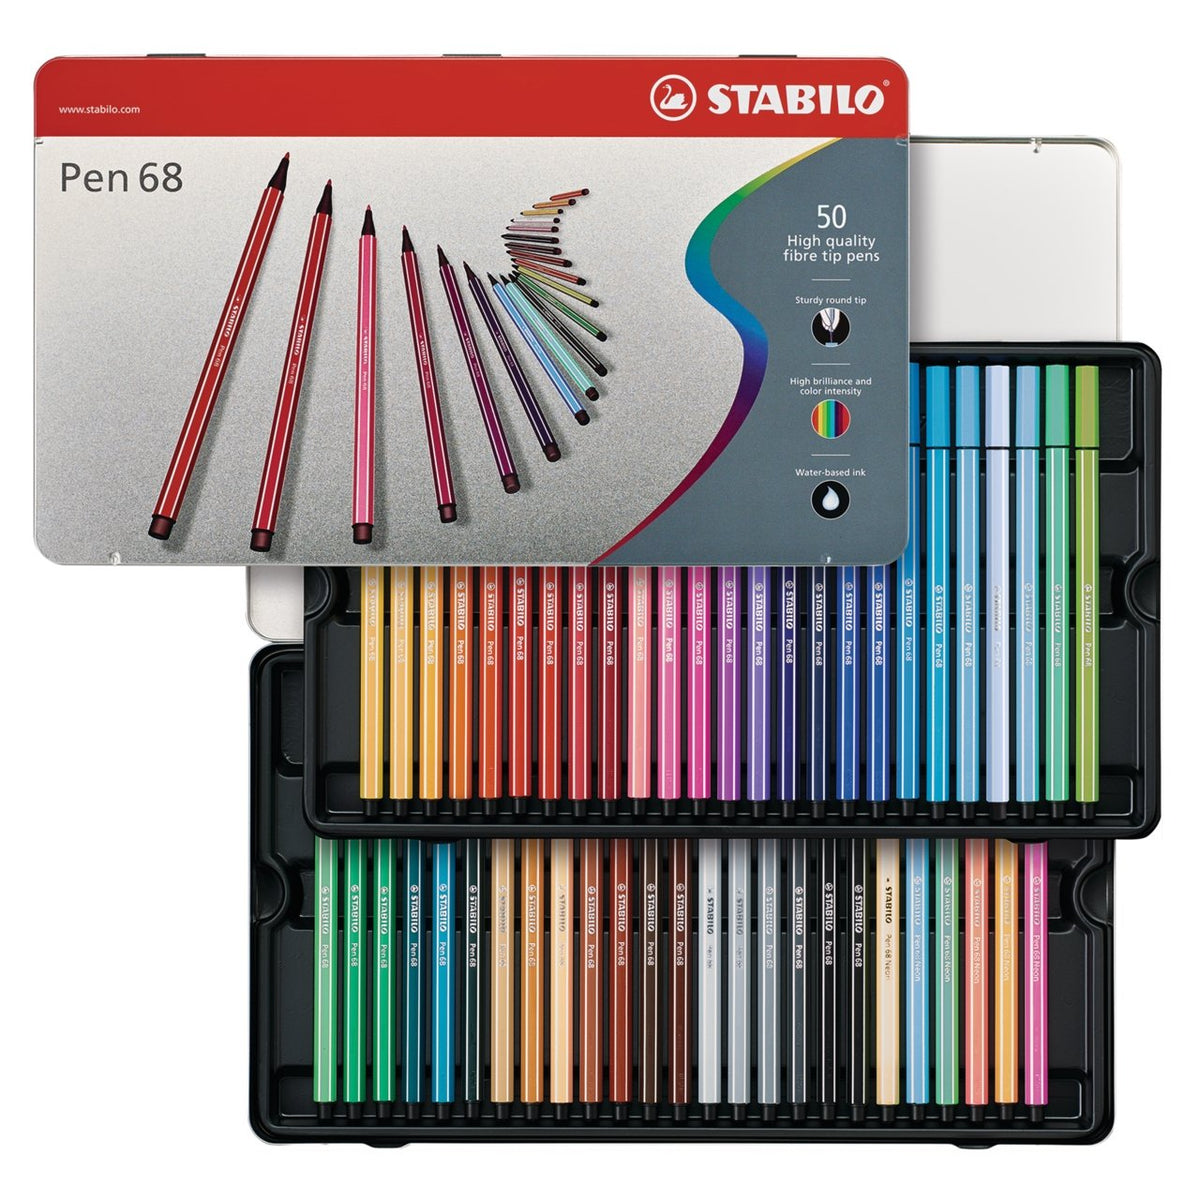 Stabilo EO6818-22 - Etui carton de 18 feutres Pen 68, pointe M, couleurs  'cocooning nature' assorties (18)